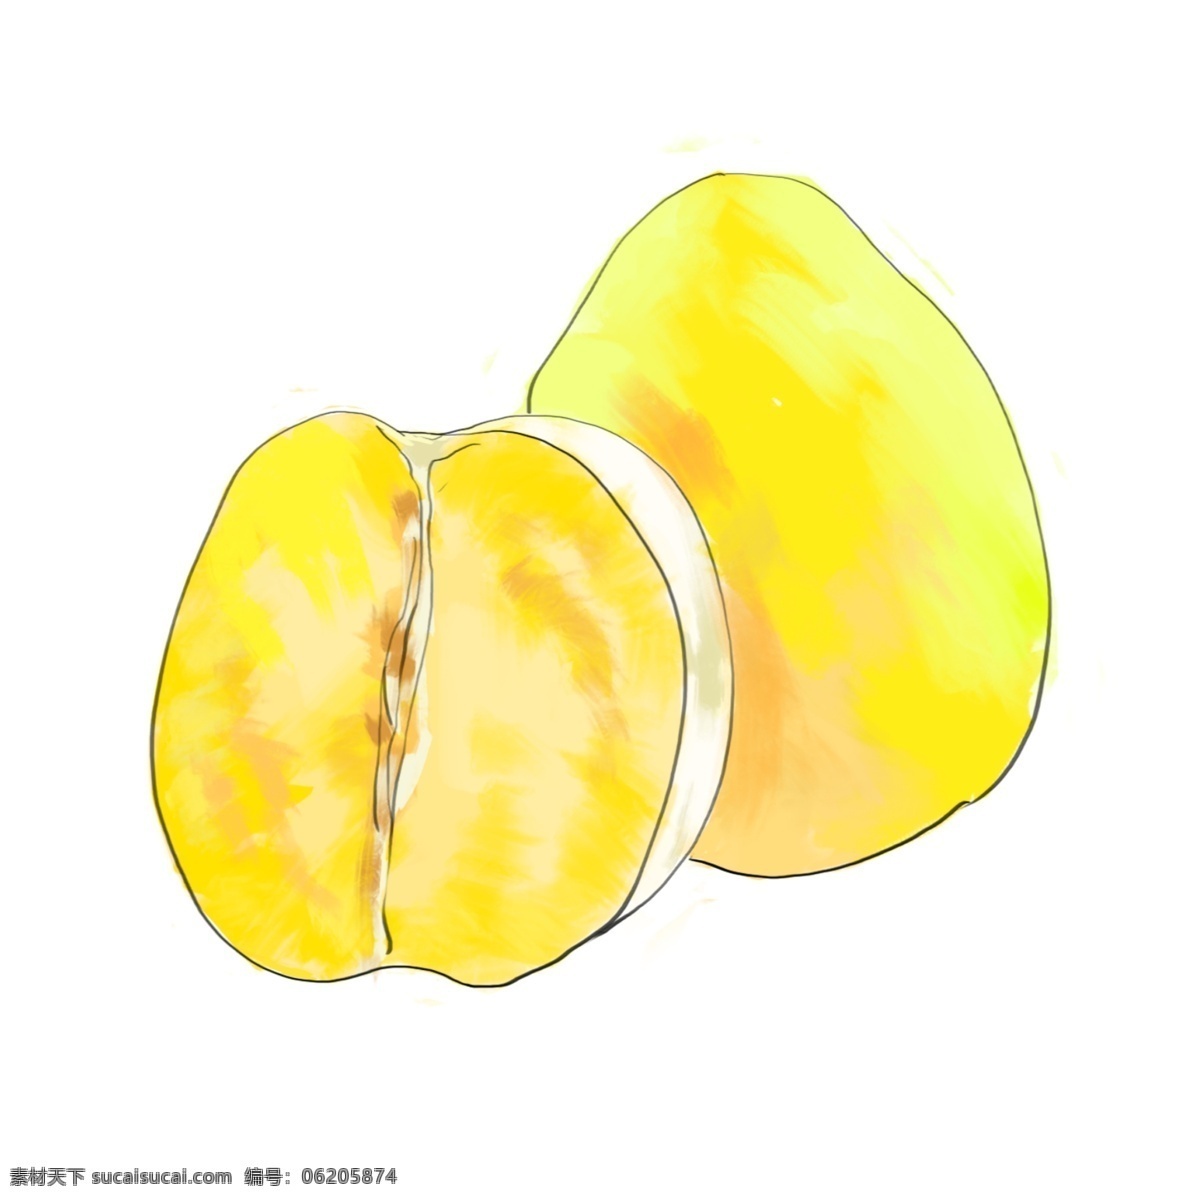 黄色 柚子 水果 插图 黄色柚子